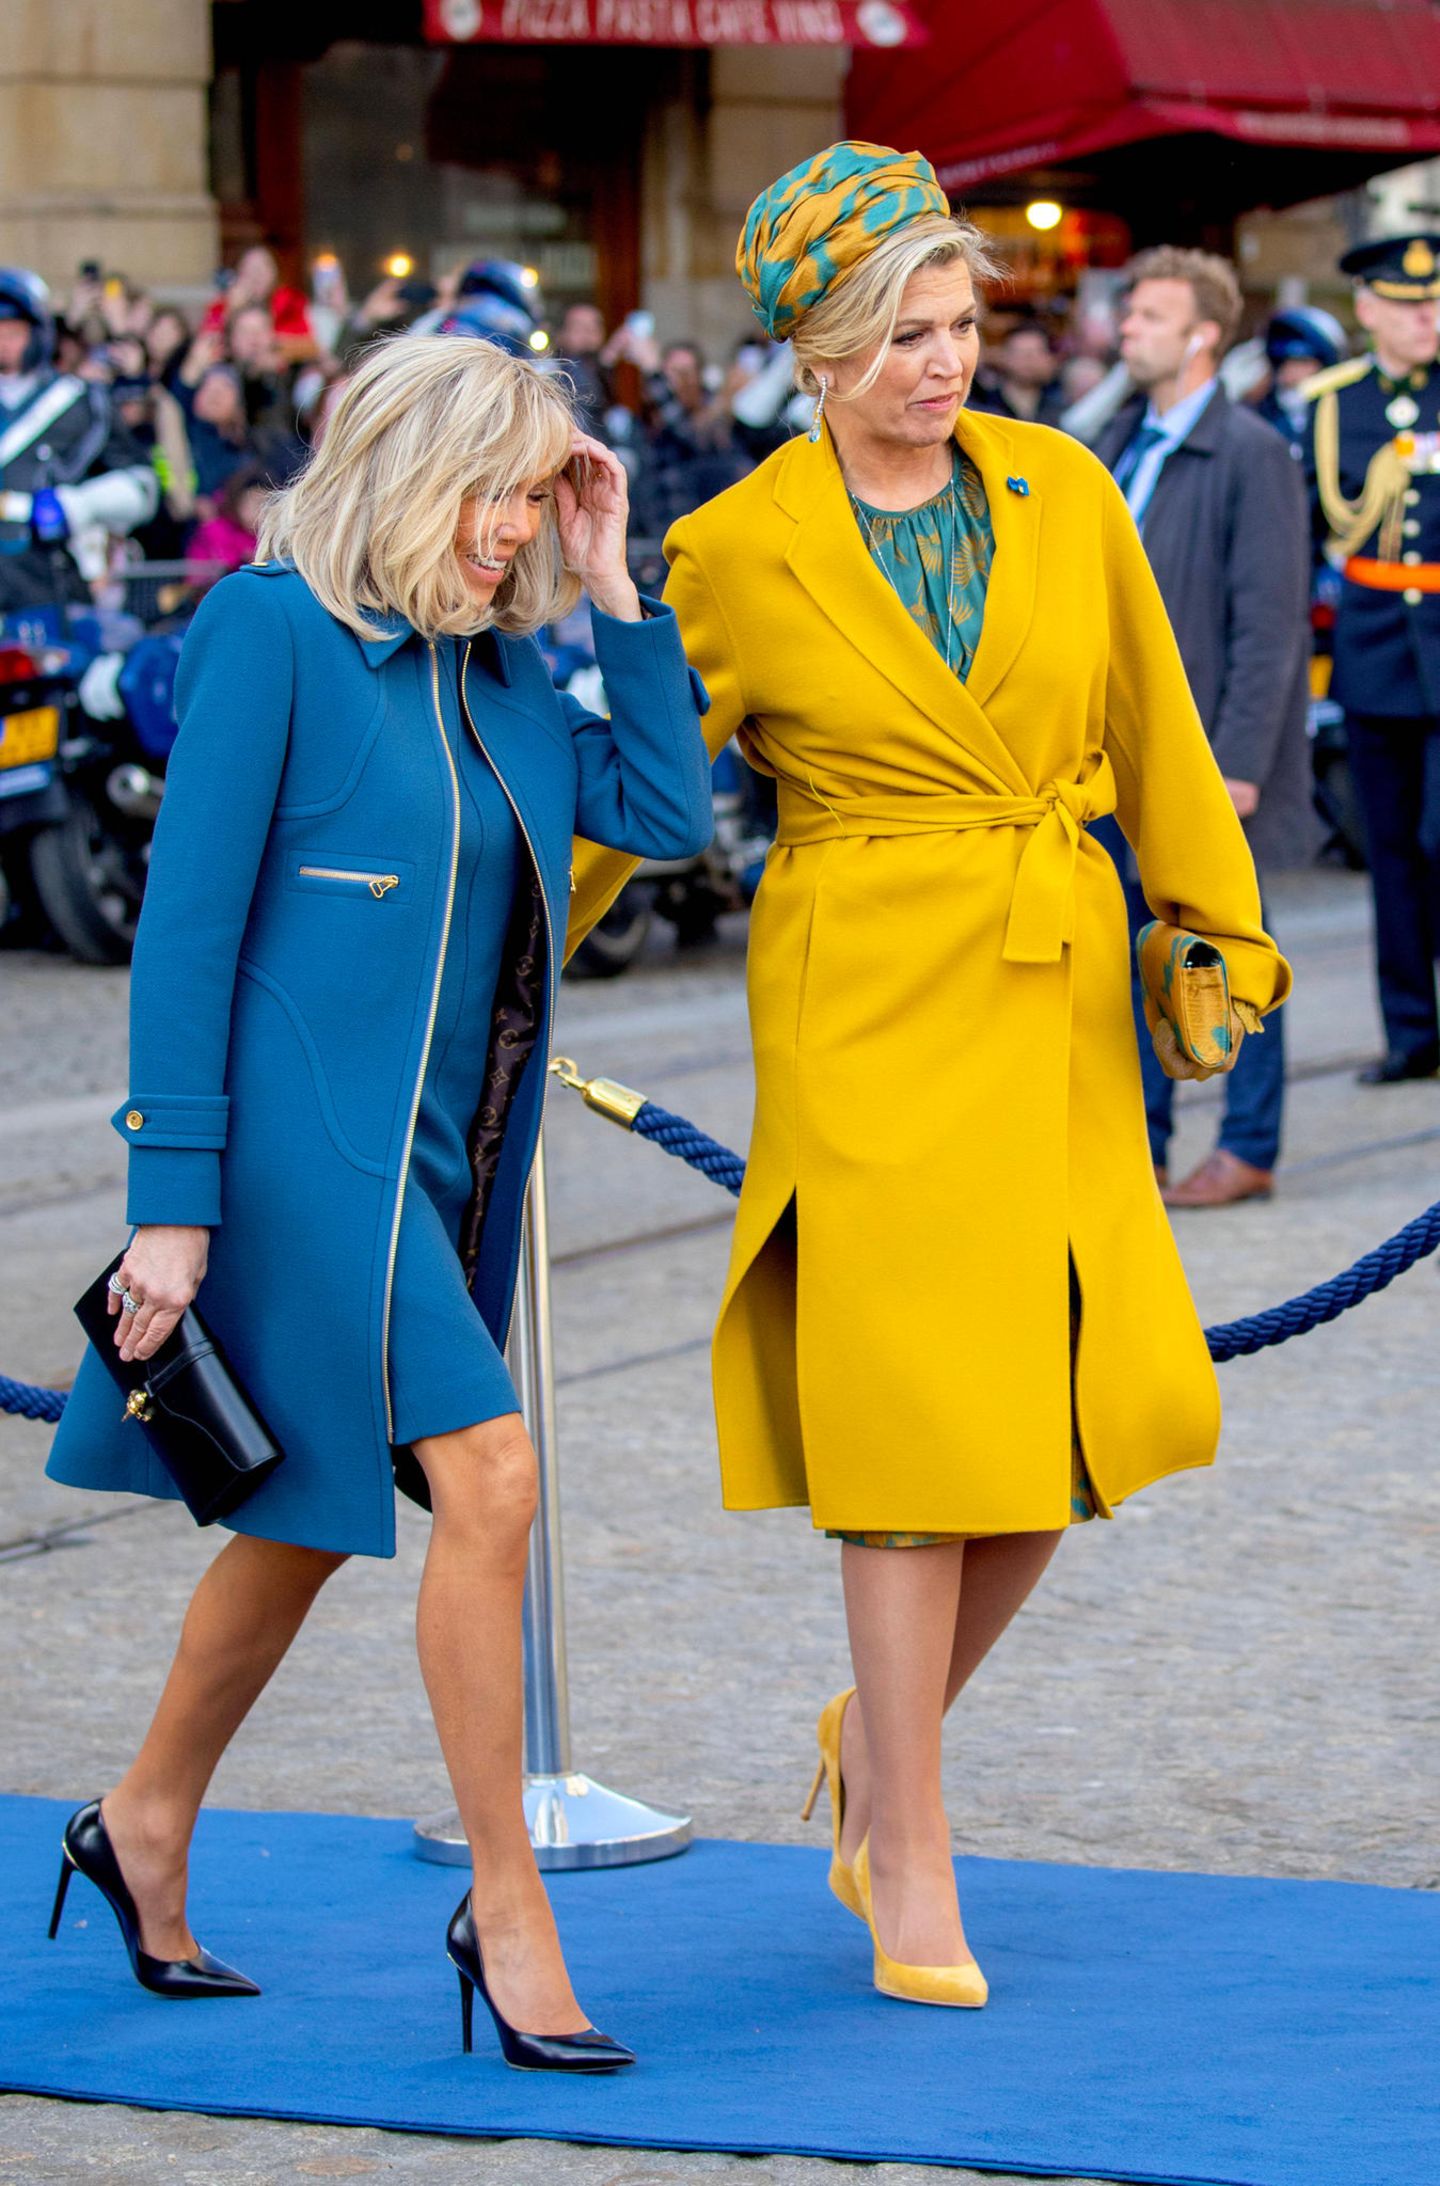 Willkommen in Amsterdam! Das niederländische Königspaar empfängt den französischen Premierminister Emmanuel Macron und seine Frau Brigitte für einen zweitägigen Besuch in der Hauptstadt. Und wie es aussieht, harmonieren Máxima und die Première Dame mit ihren Outfits schon vom ersten Moment an. Das mattblaue Ensemble mit Etuikleid und Mantel passt hervorragend zum senfgelben Mantel von Natan Couture, unter dem die Königin ein grüngoldenes Kleid mit passender Kopfbedeckung trägt.